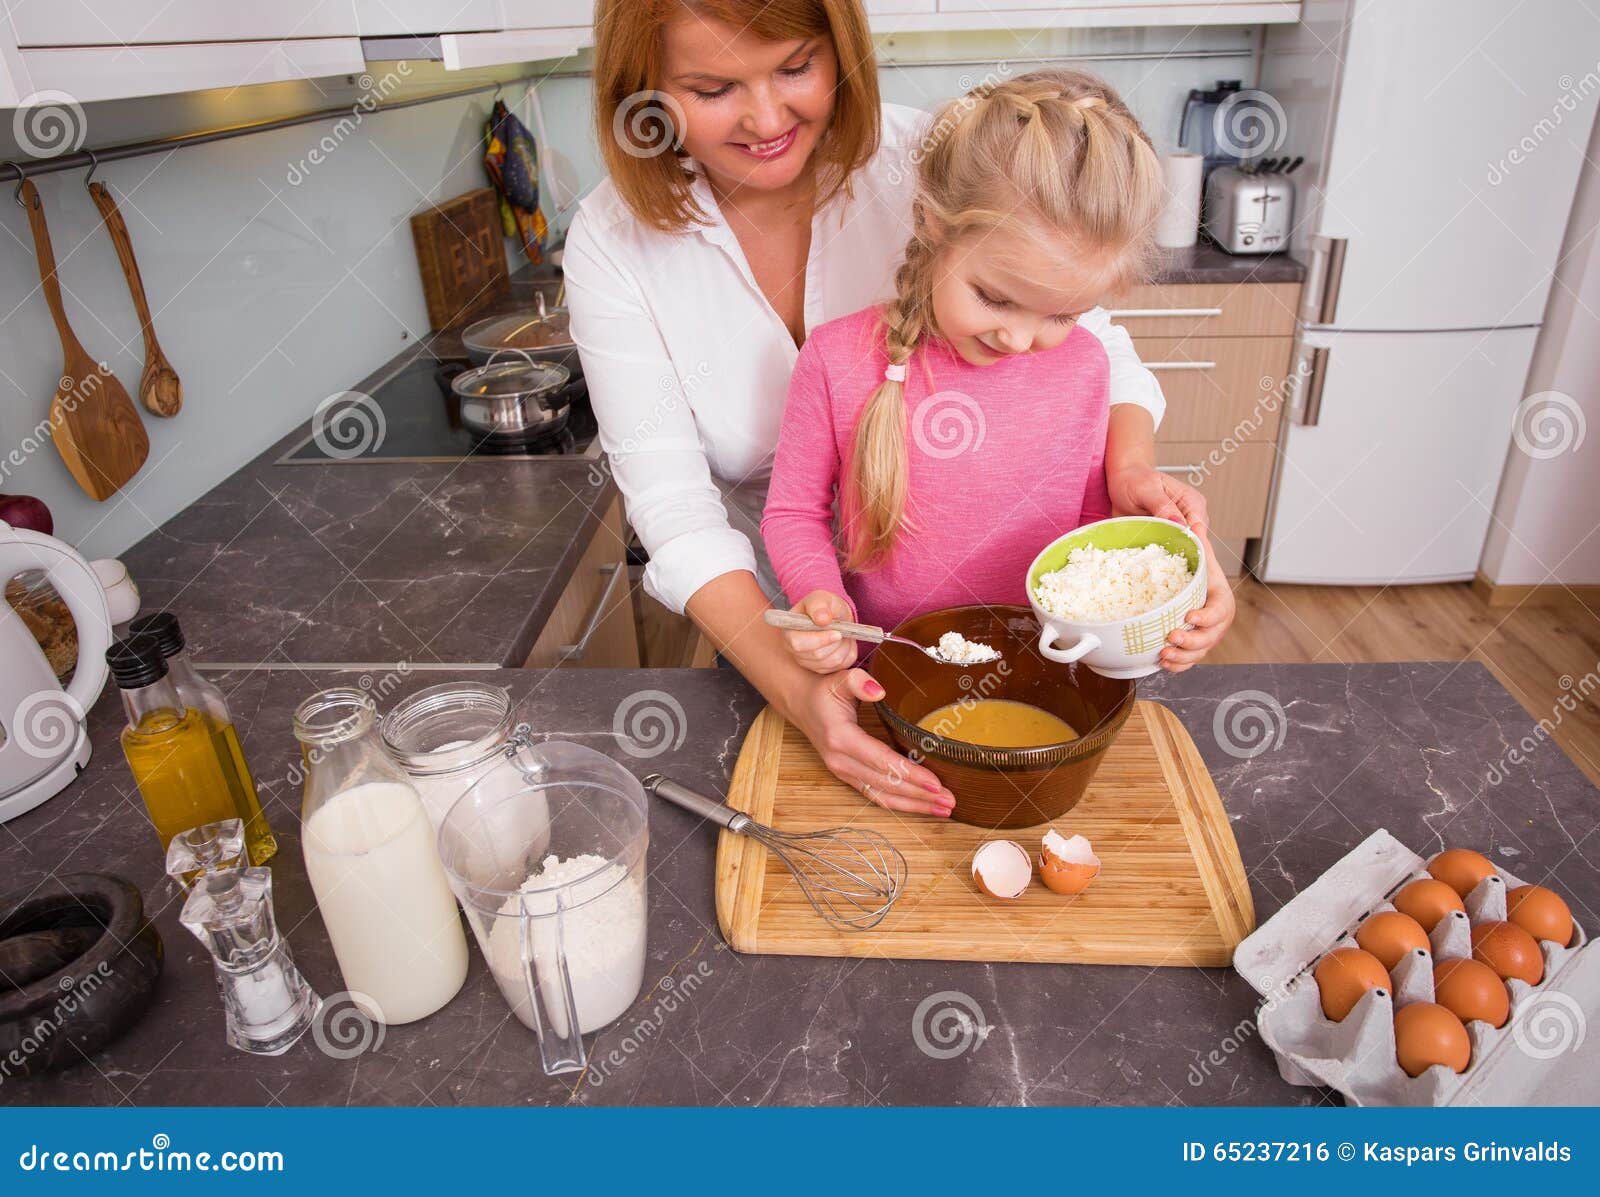 Мама готовит блины. Мама с дочкой пекут блины. Мама и дочь пекут торт. Блинчики приготовленные с мамой и дочкой. Мама печет блины.